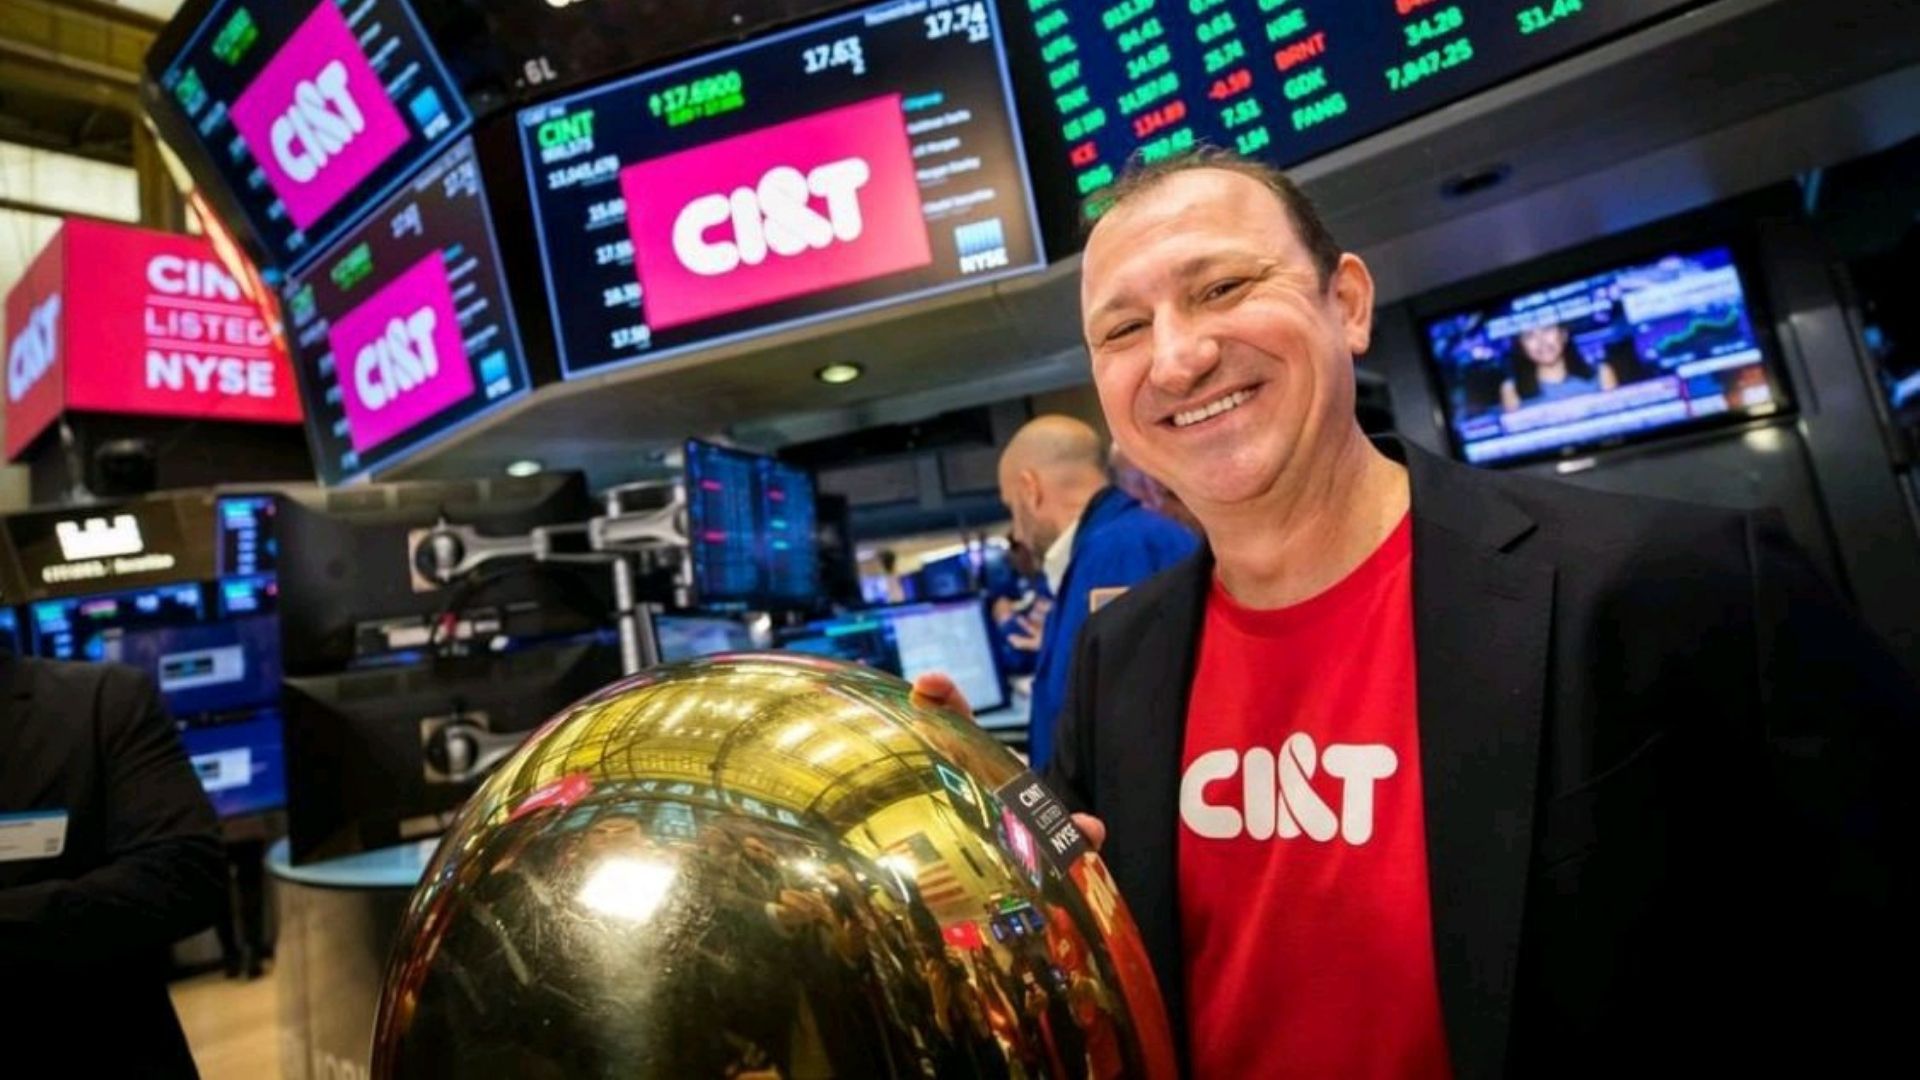 Homem, aproximadamente 40 anos, veste camisa vermelha com terno preto e tem a mão direita sobre um globo dourado. Ao fundo monitores de computador